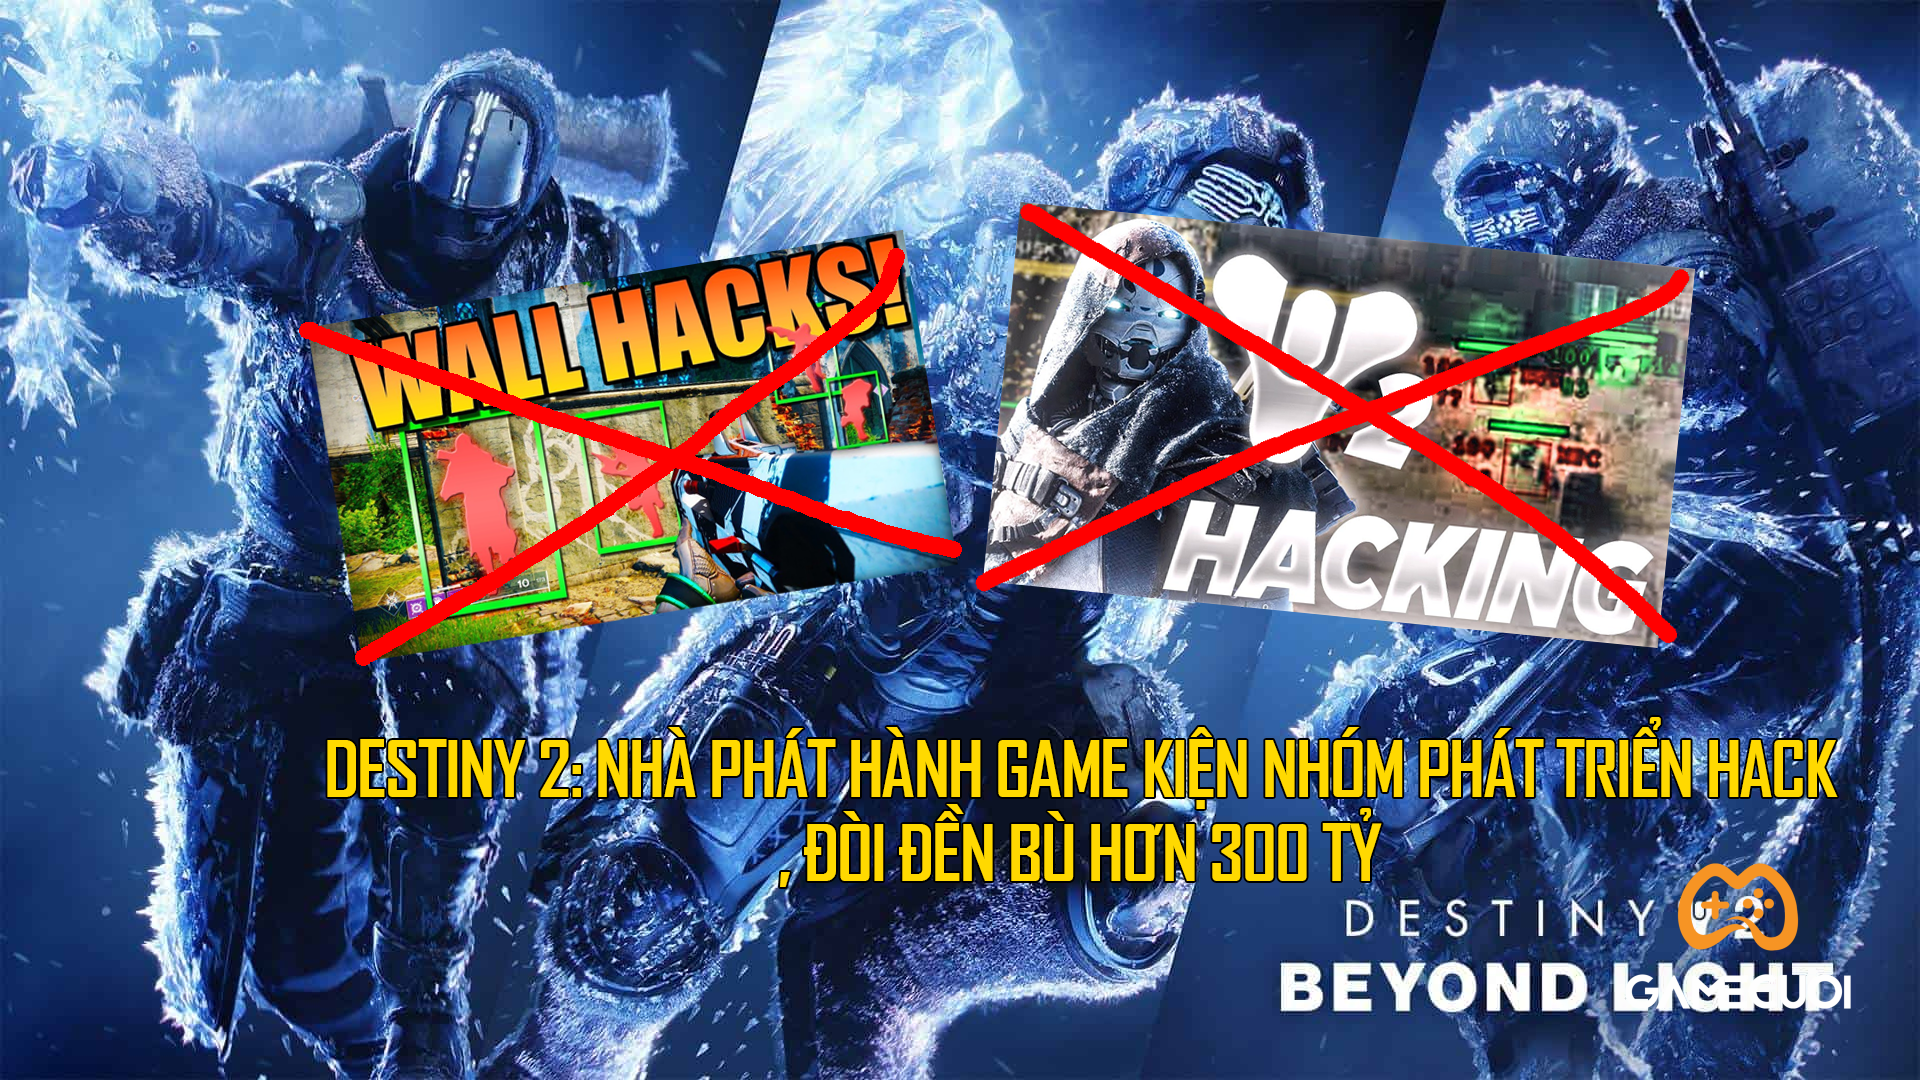 Destiny 2: Nhà phát hành game kiện nhóm phát triển hack, đòi đền bù hơn 300 tỷ